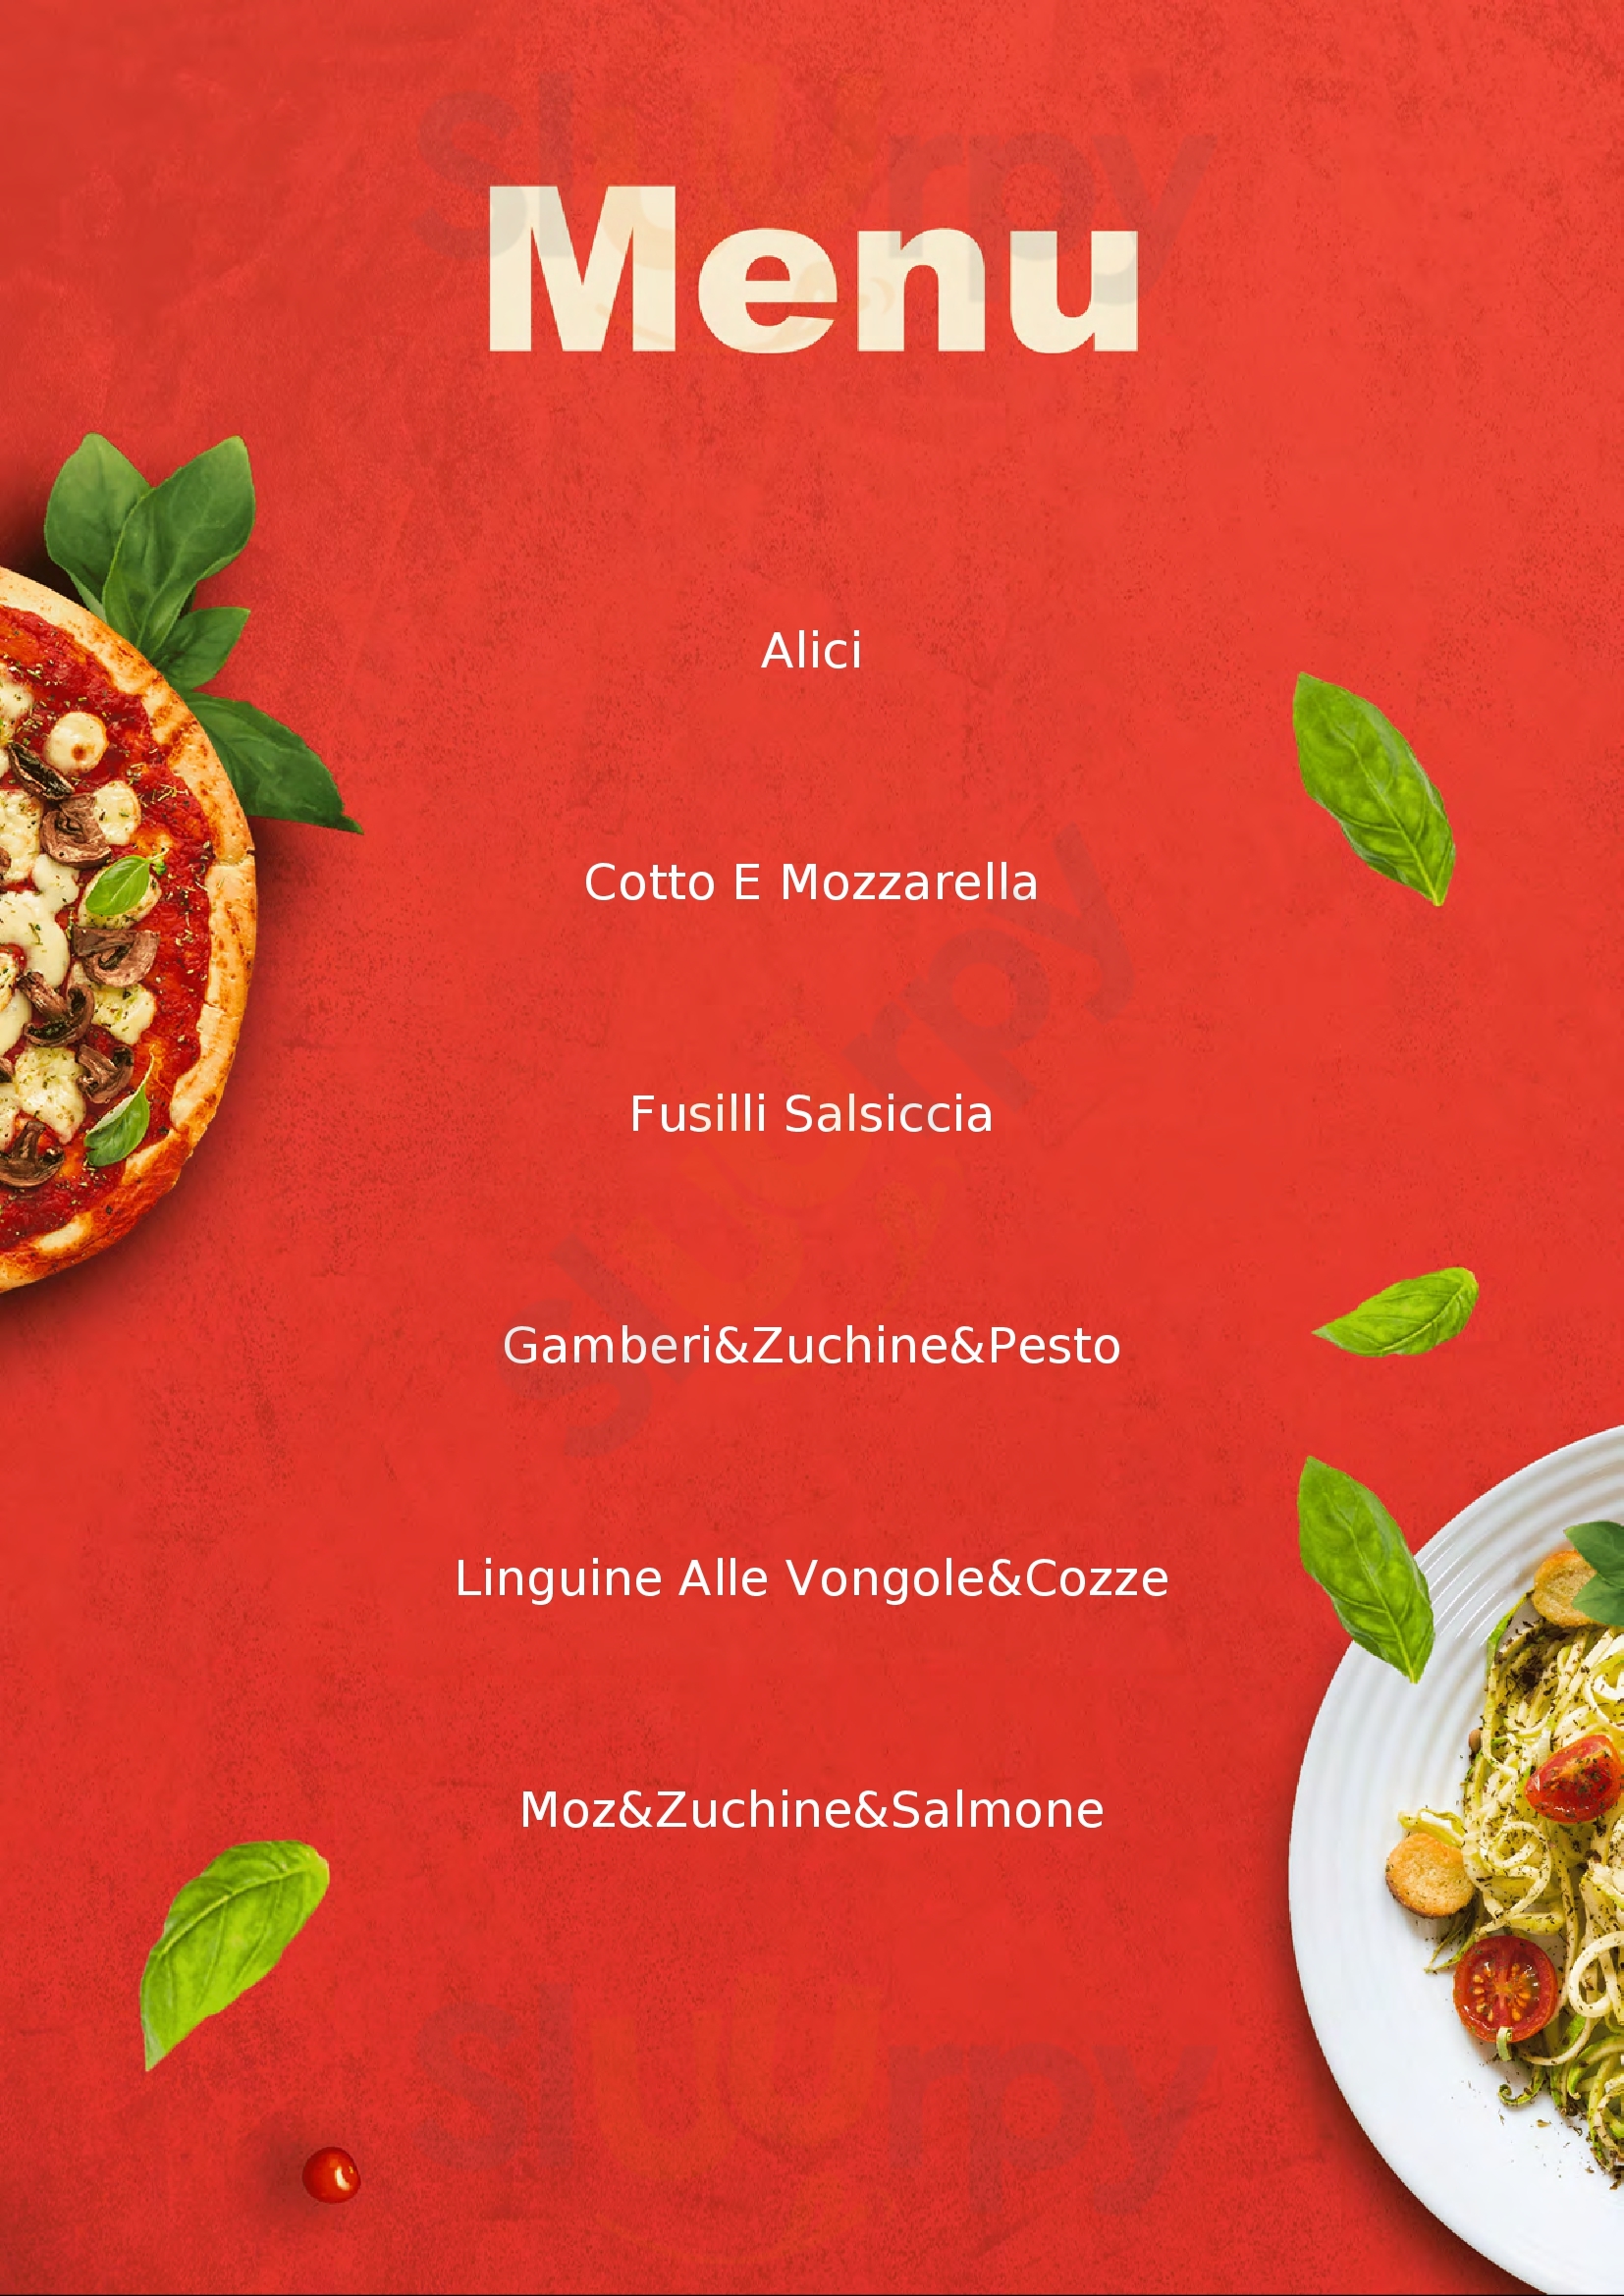 L'Arte della Pizza Pistoia menù 1 pagina